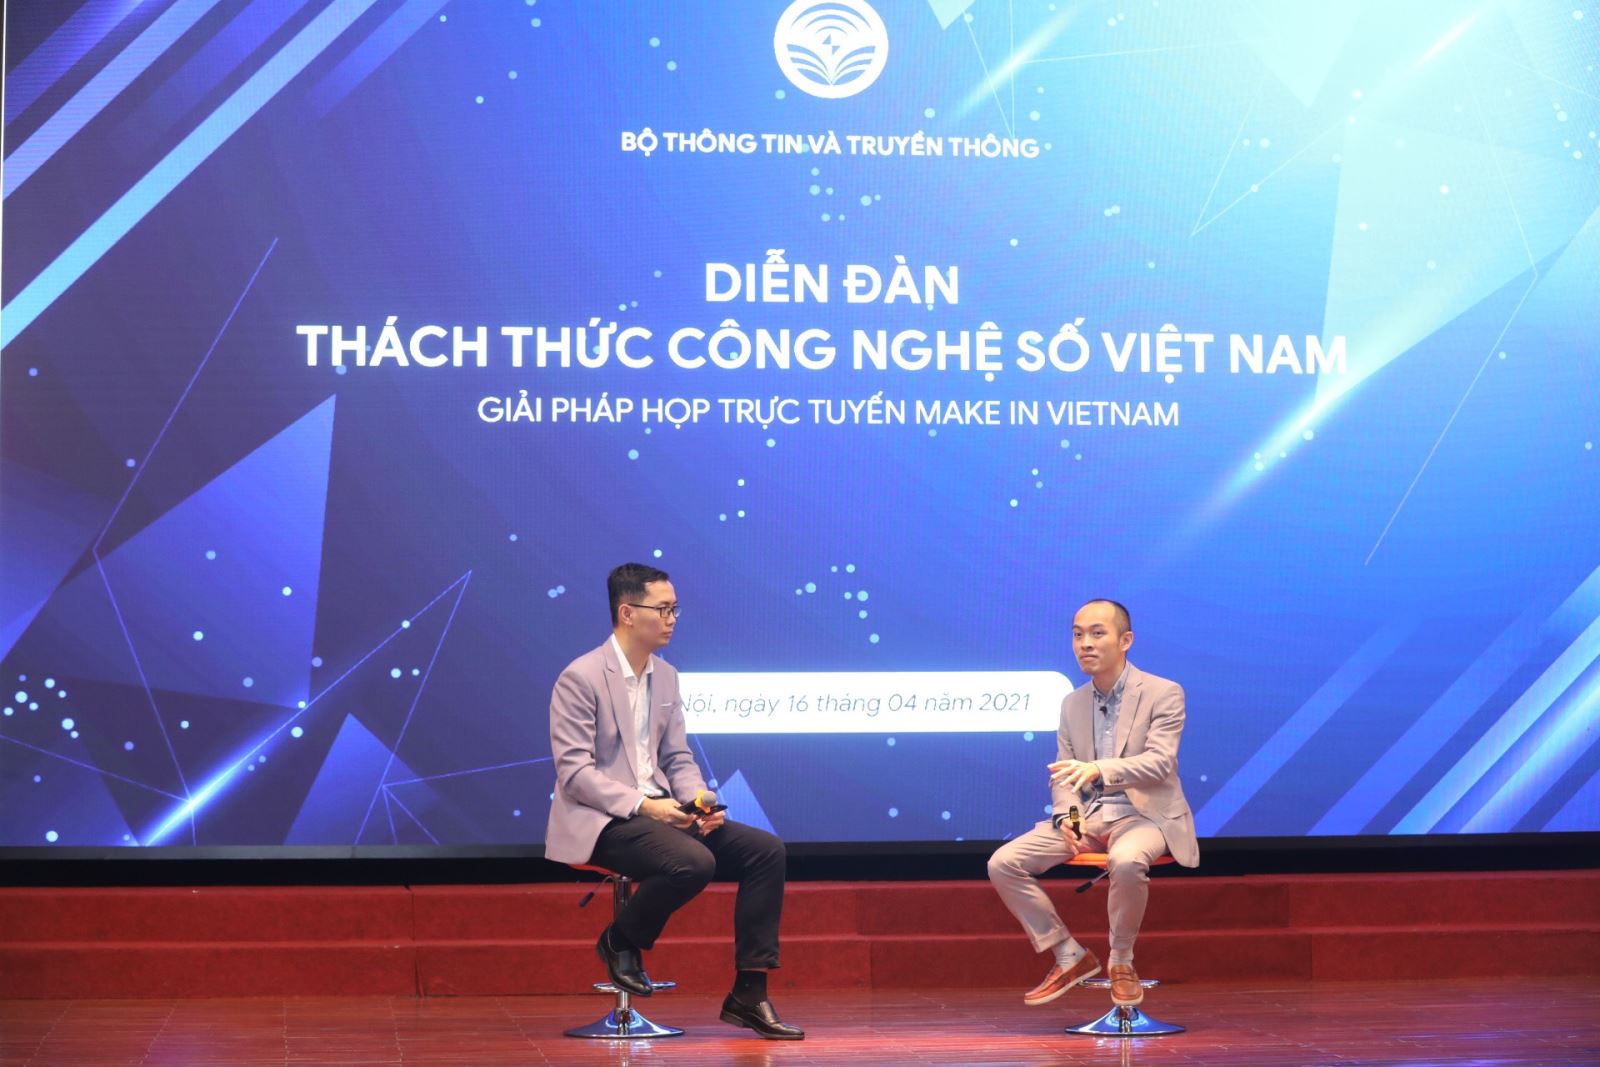 Ông Vũ Ngọc Sơn, Phó Chủ tịch Tập đoàn công nghệ Bkav trao đổi về các giải pháp để phát triển sản phẩm eMeeting họp trực tuyến.